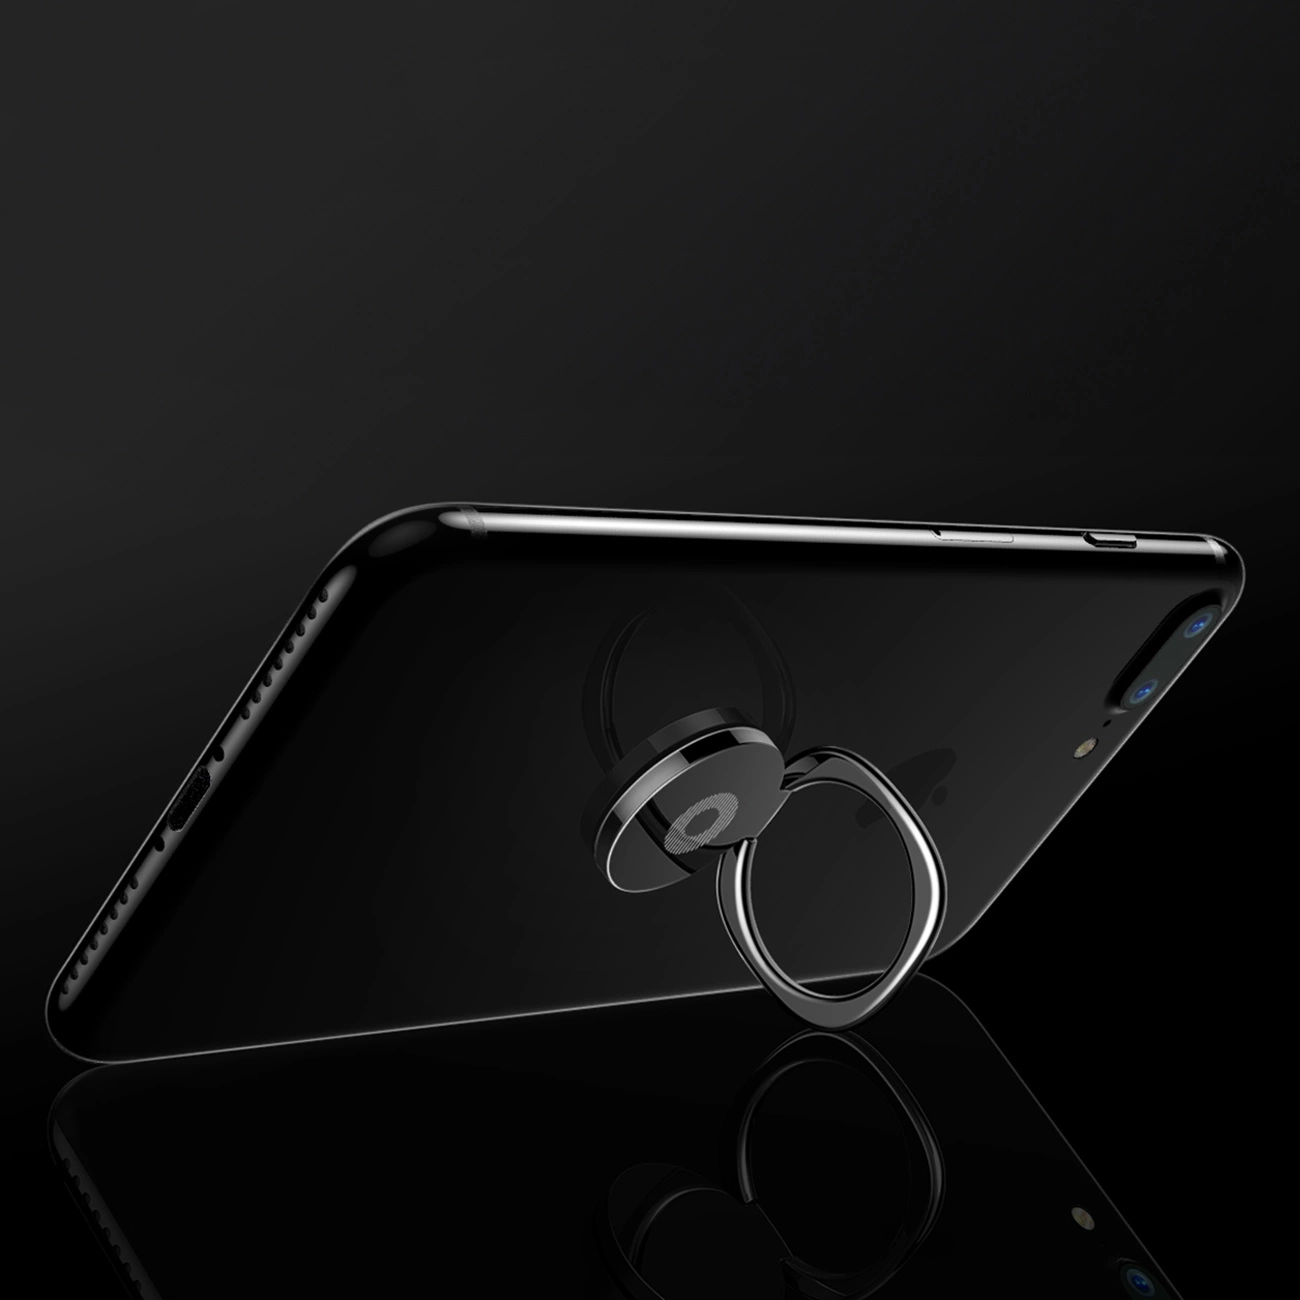 Rozłożony uchwyt Baseus Privity Ring z przymocowanym telefonem oparty o szklaną podłogę na czarnym tle